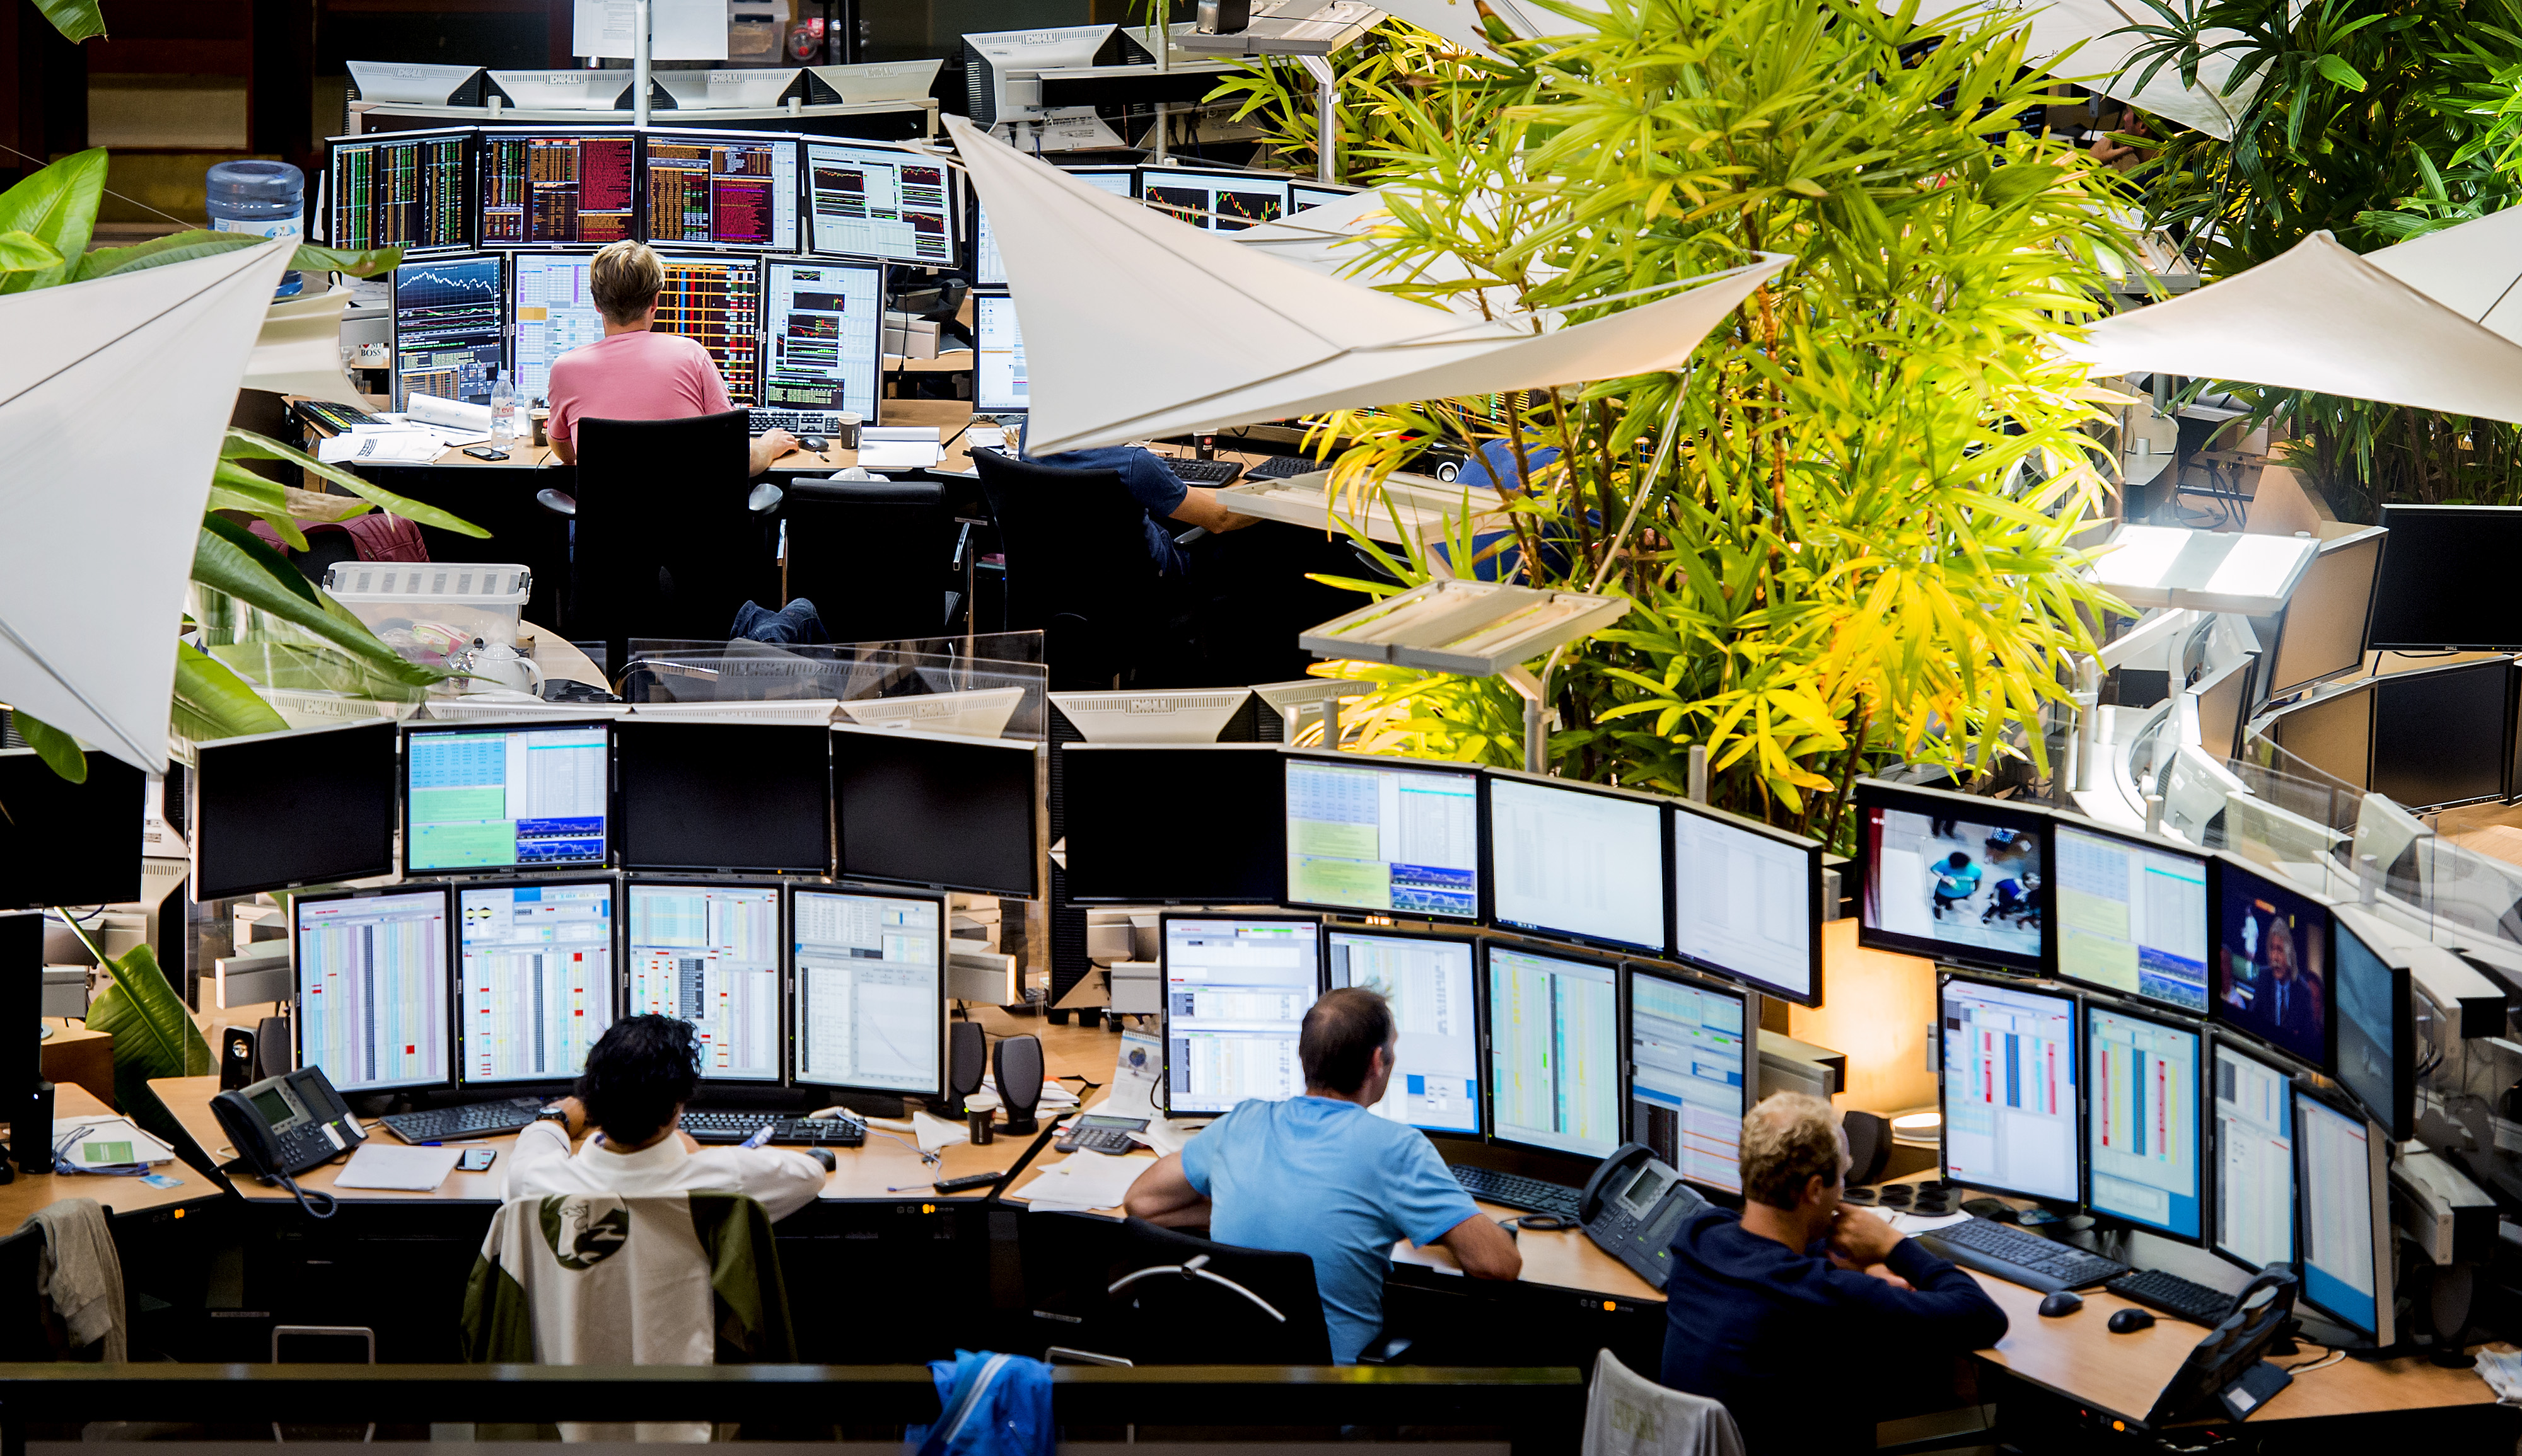 2015-08-25 09:07:27 AMSTERDAM - Handel op Euronext. De effectenbeurs is met winst begonnen. Alle 25 fondsen in de AEX gingen omhoog daags na de flinke koersduikeling. ANP KOEN VAN WEEL